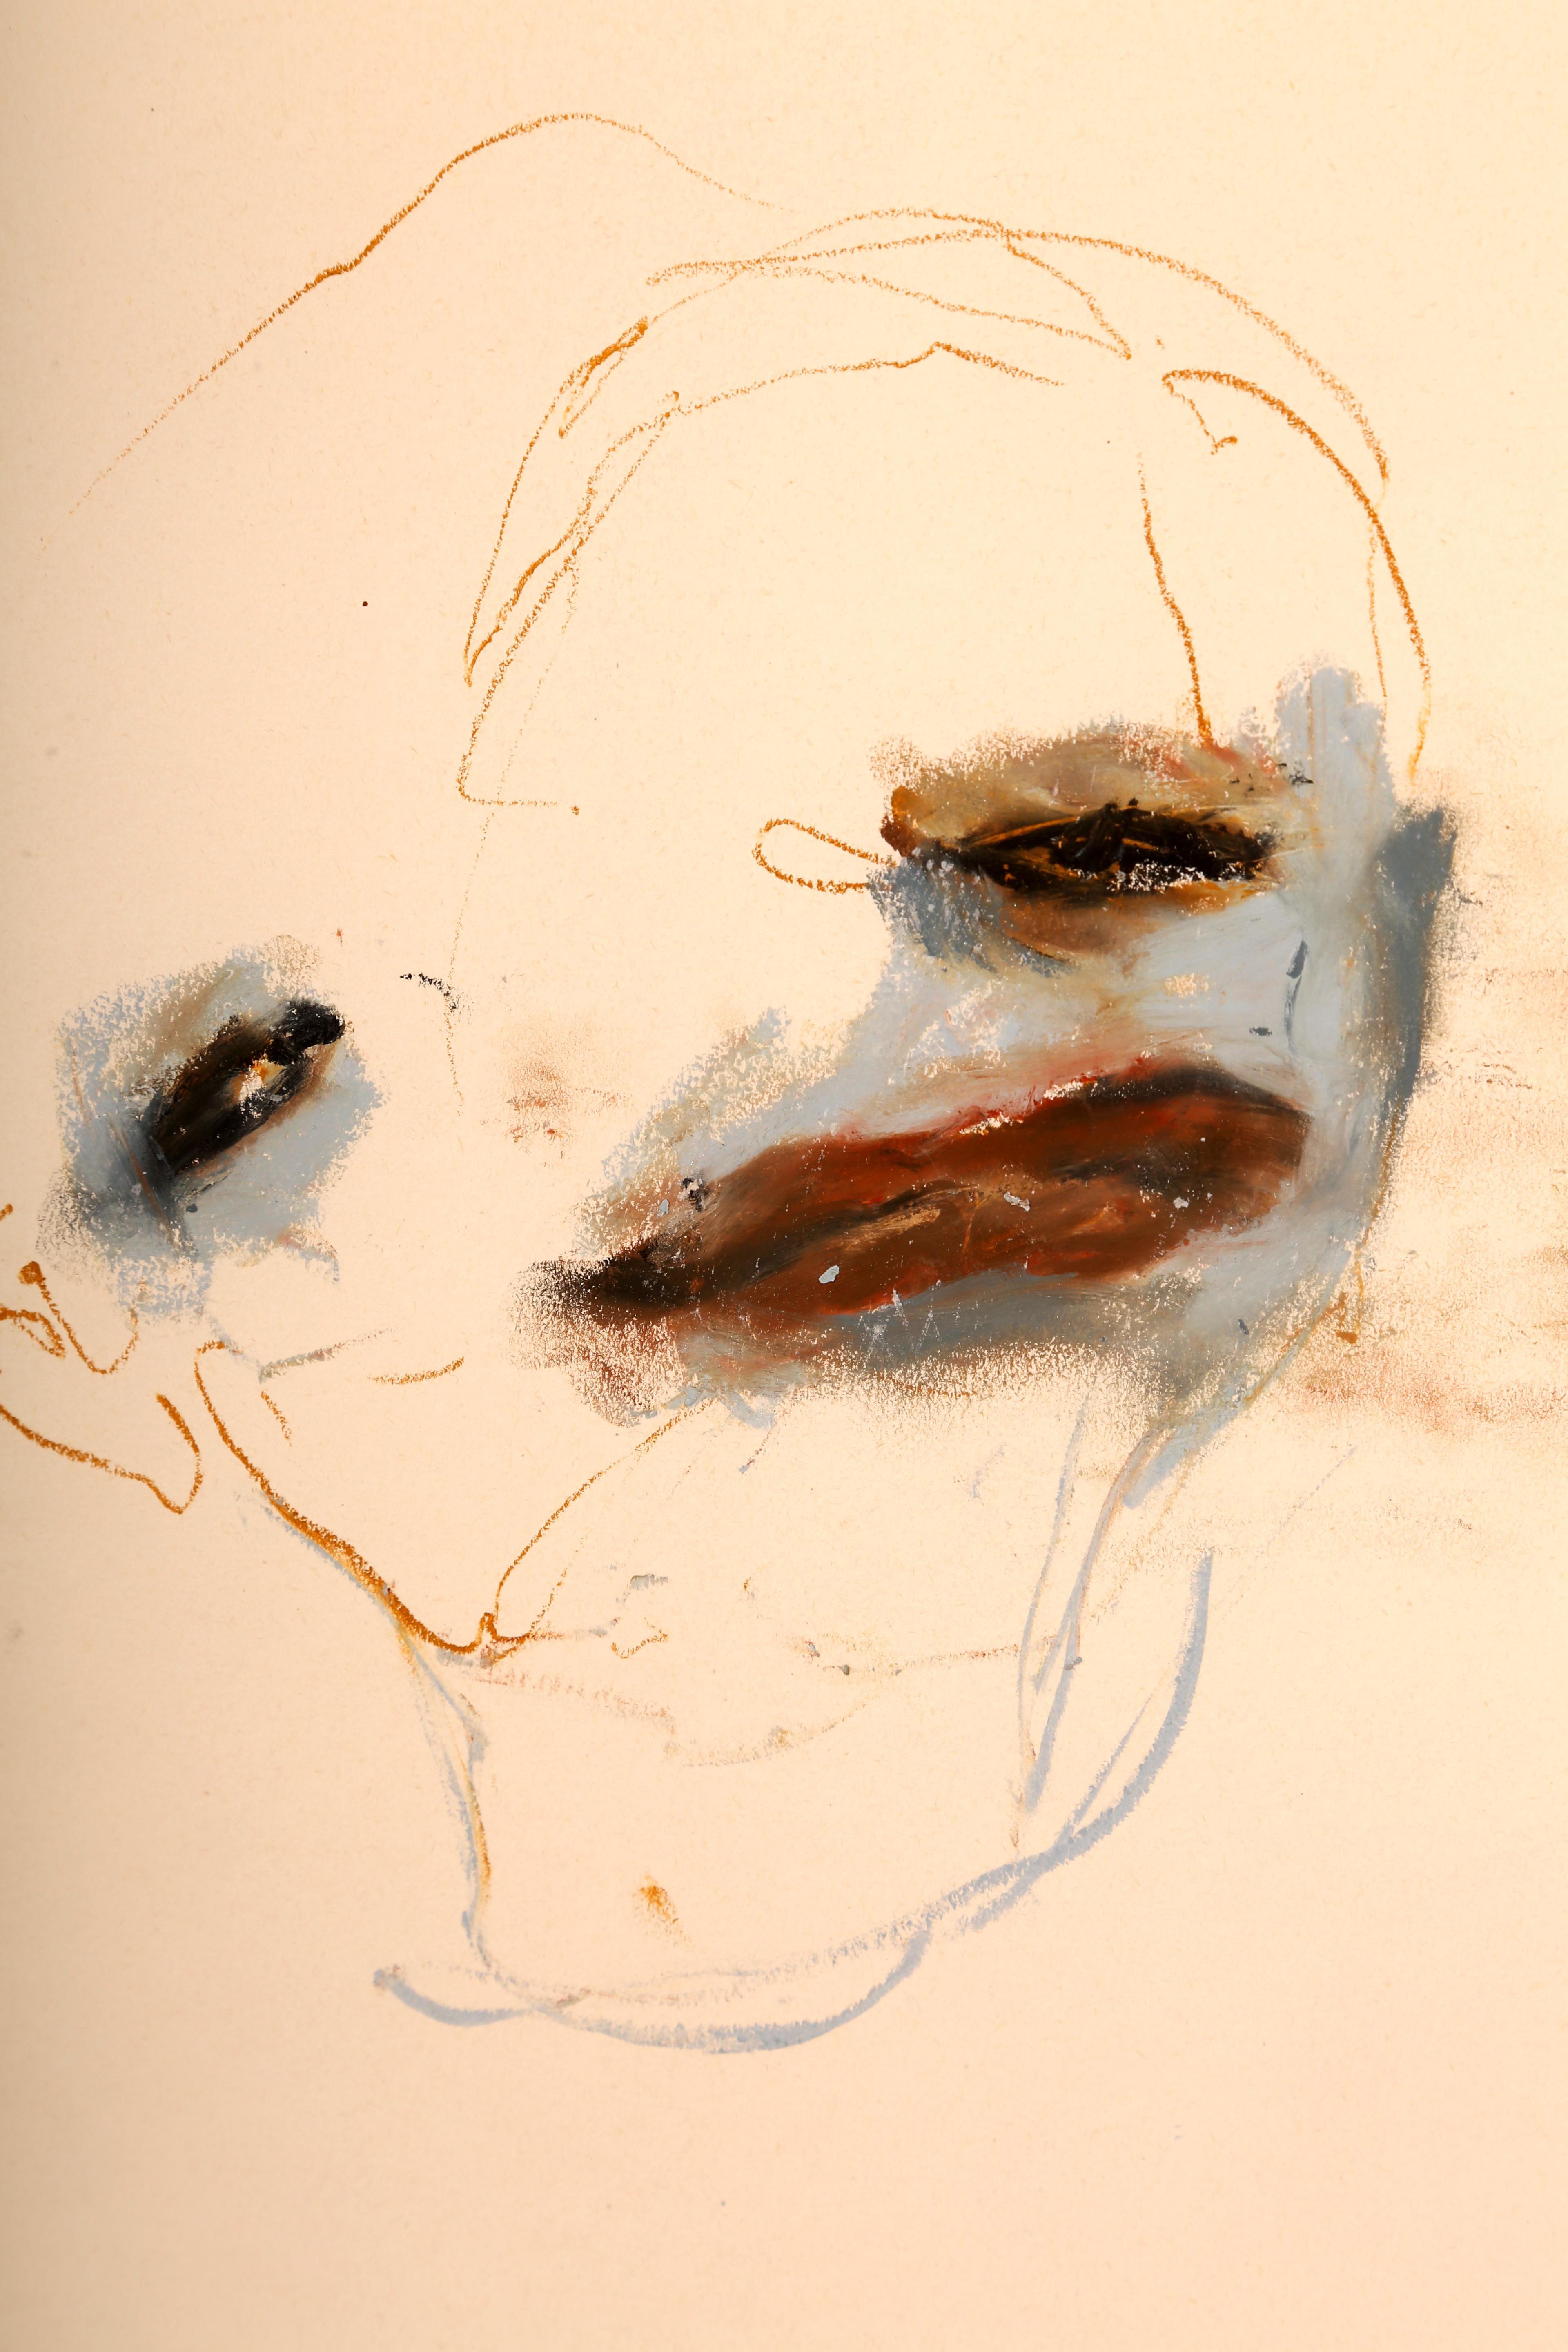 José Vivenes
Untitled, 2006
Oil pastel on paper
20 1/2 x 15 1/2 inches  (52.1 x 39.4 cm)